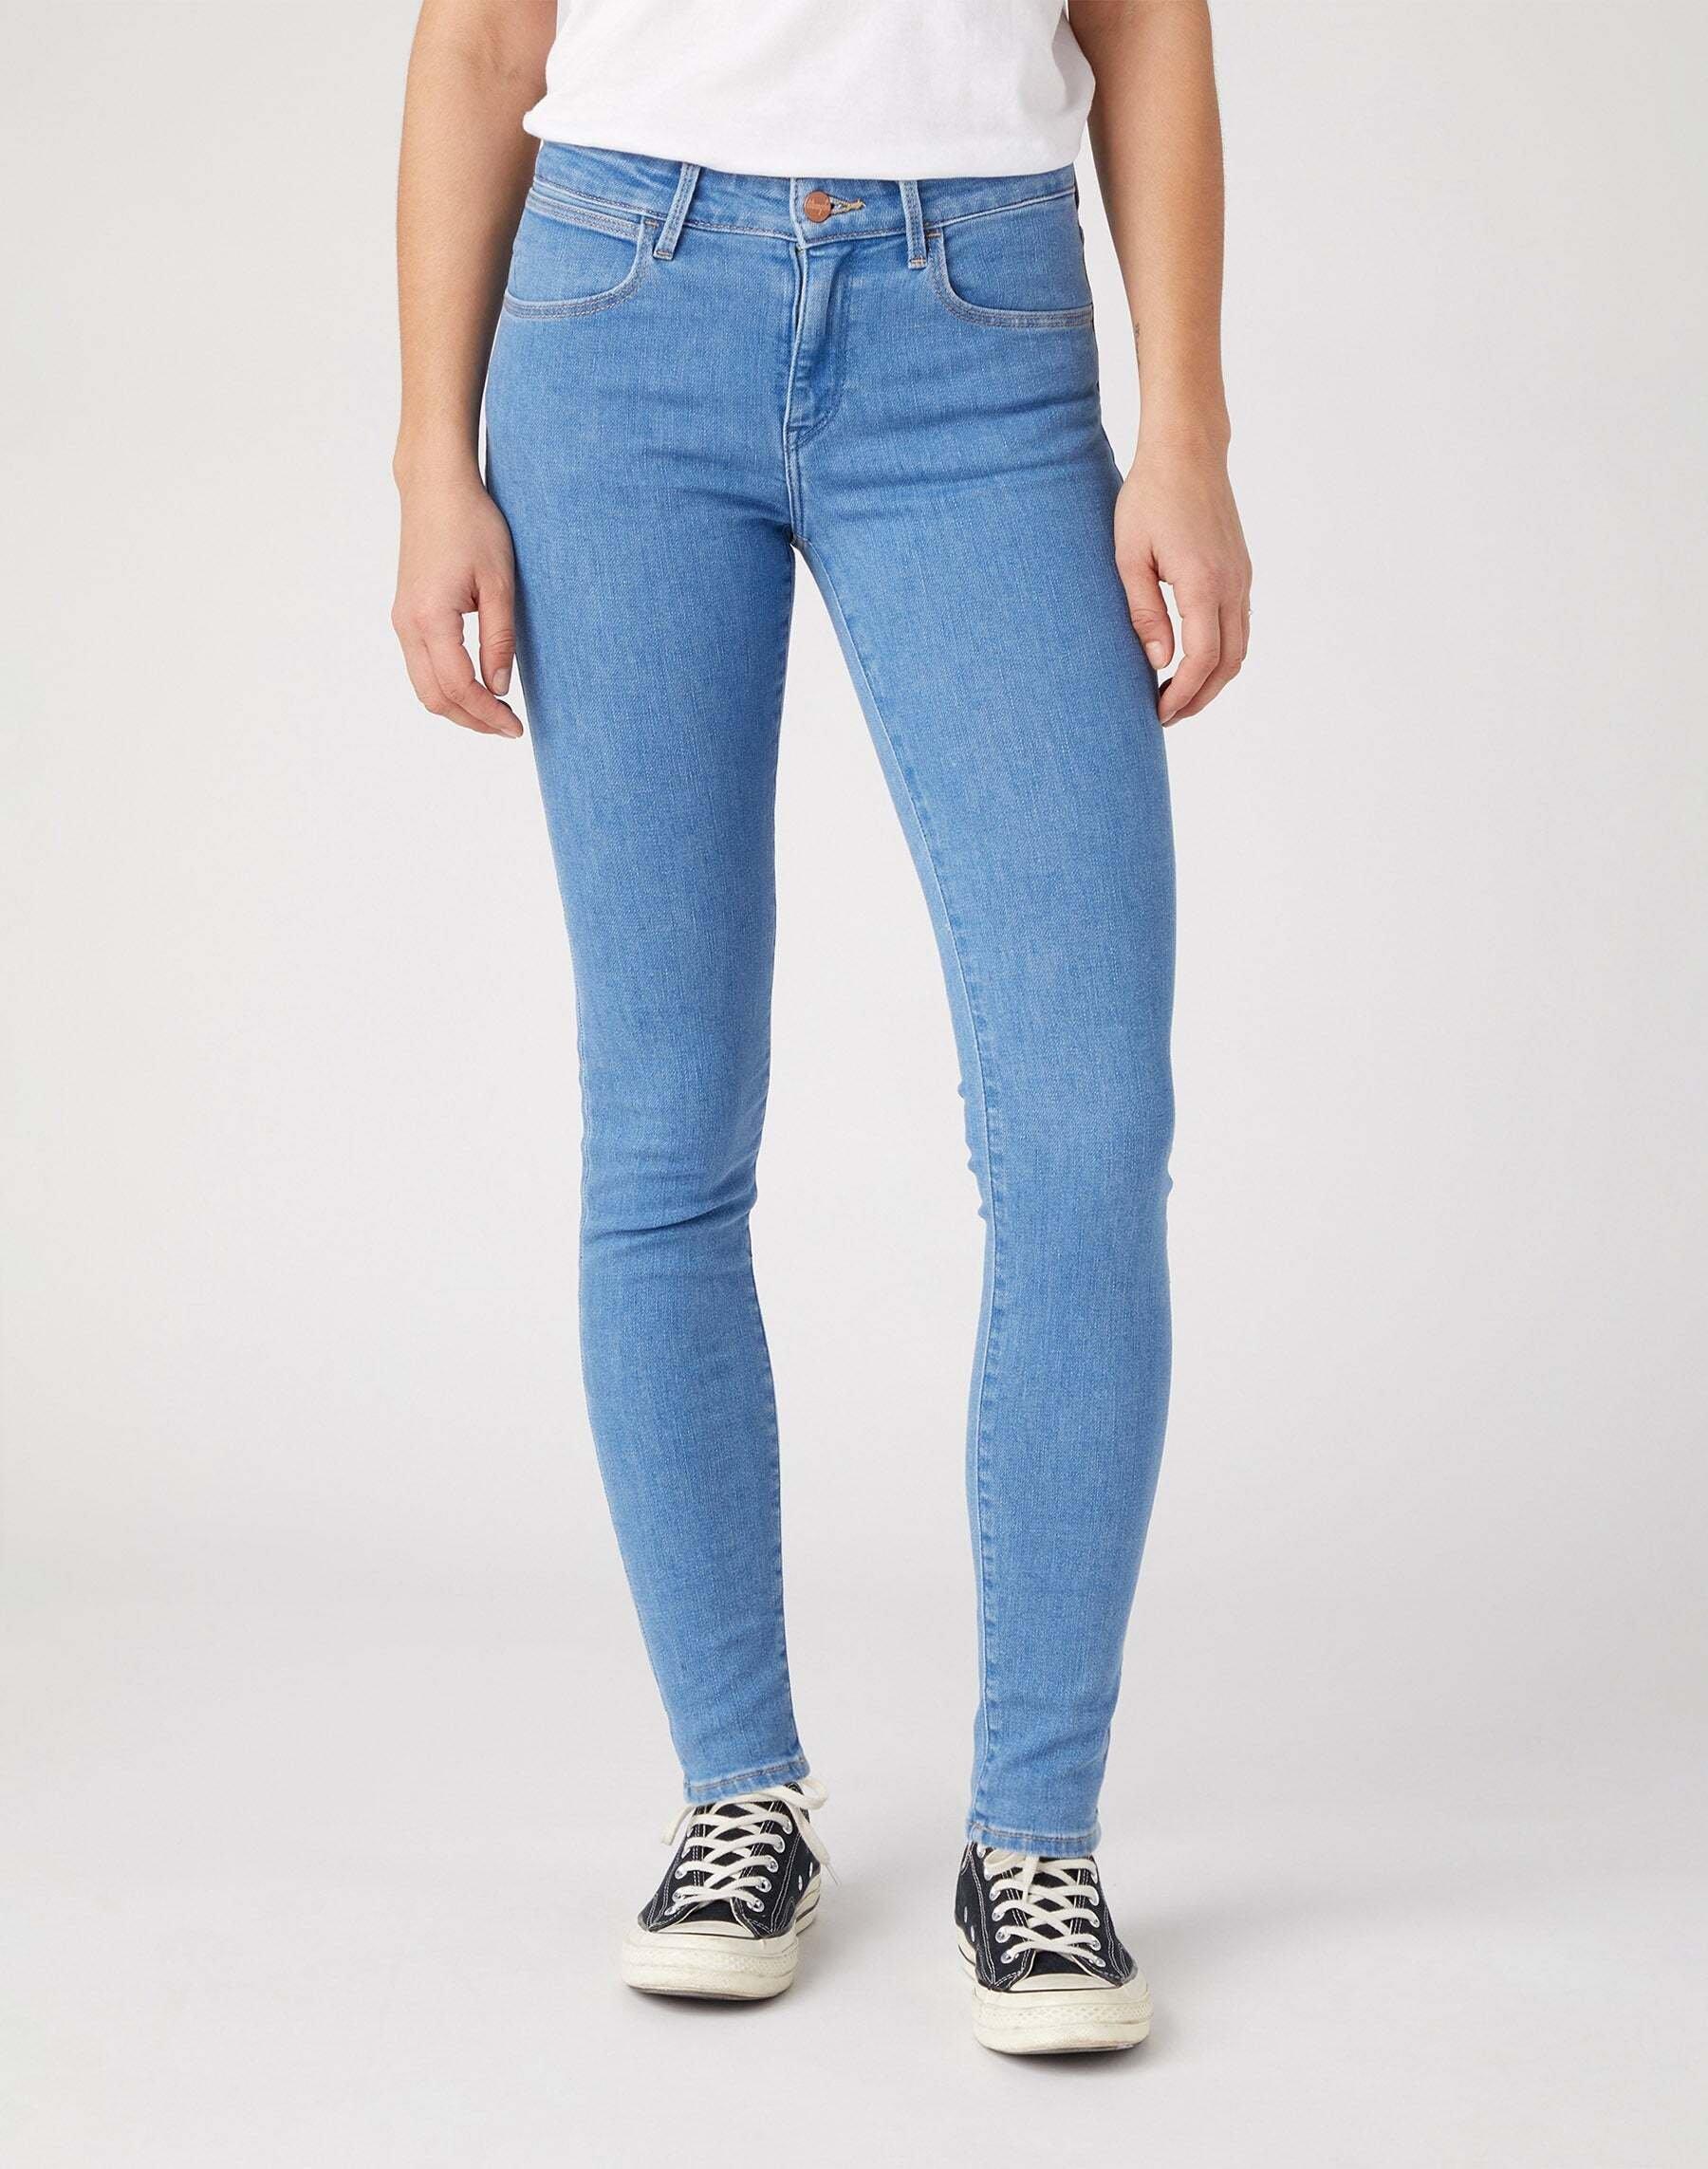 Jeans Skinny Damen Blau W26 von Wrangler